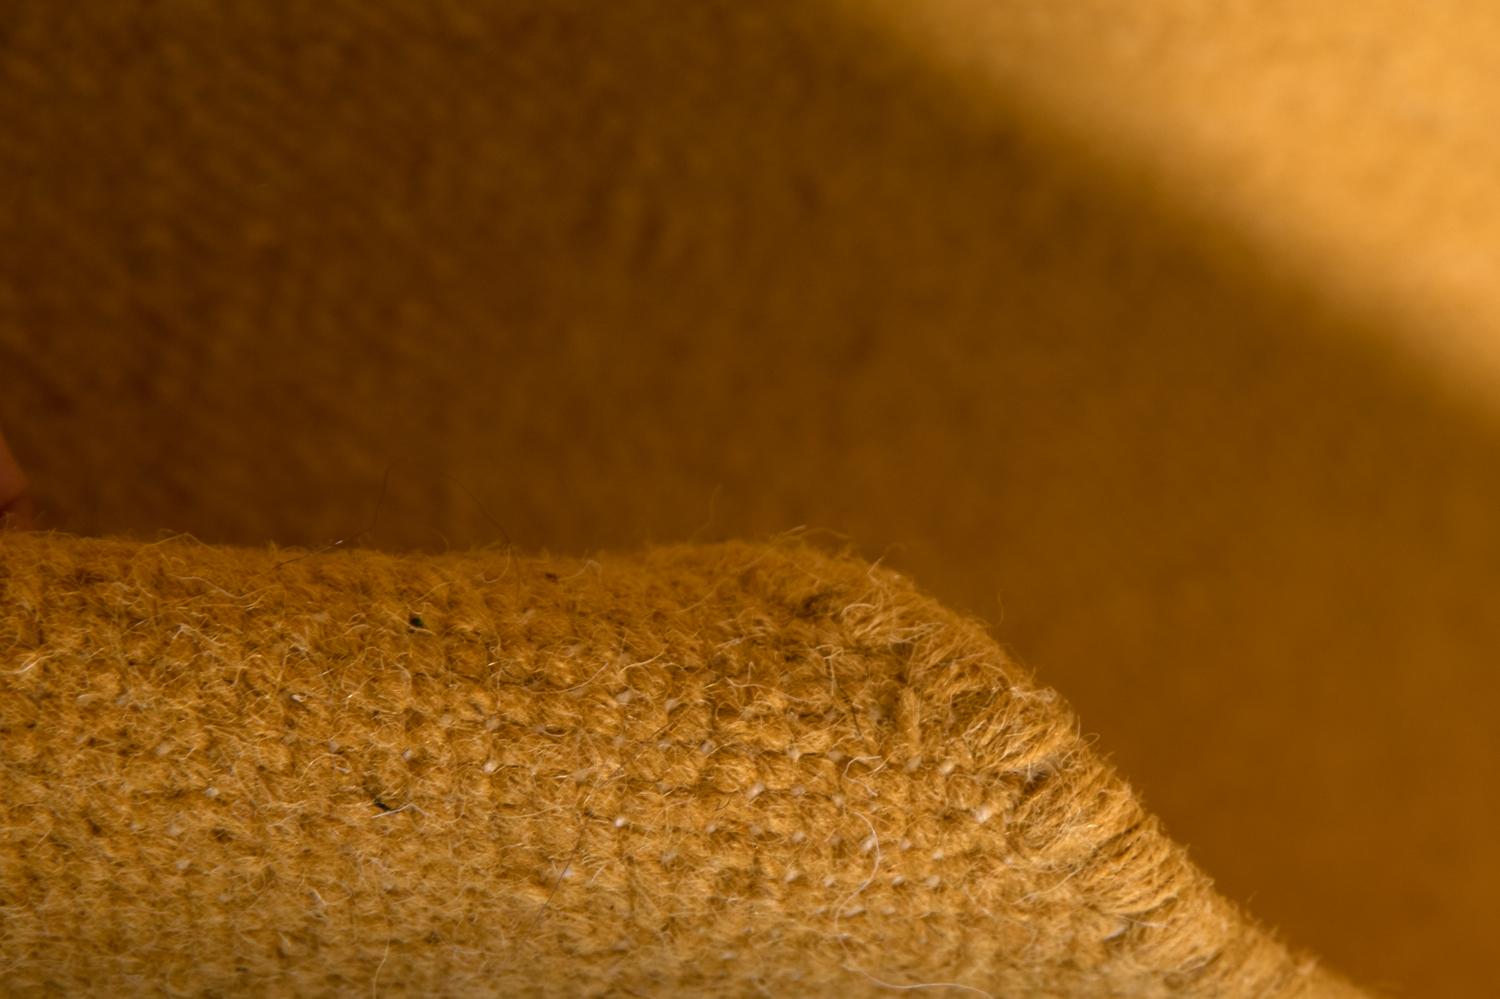 Eyes est un dessin de Rocío Leon pour Kilombo Home.

Ce tapis a été tissé à la main de manière éthique dans les fils de laine les plus fins par des artisans du nord de l'Inde, en utilisant une technique de tissage traditionnelle originaire de cette